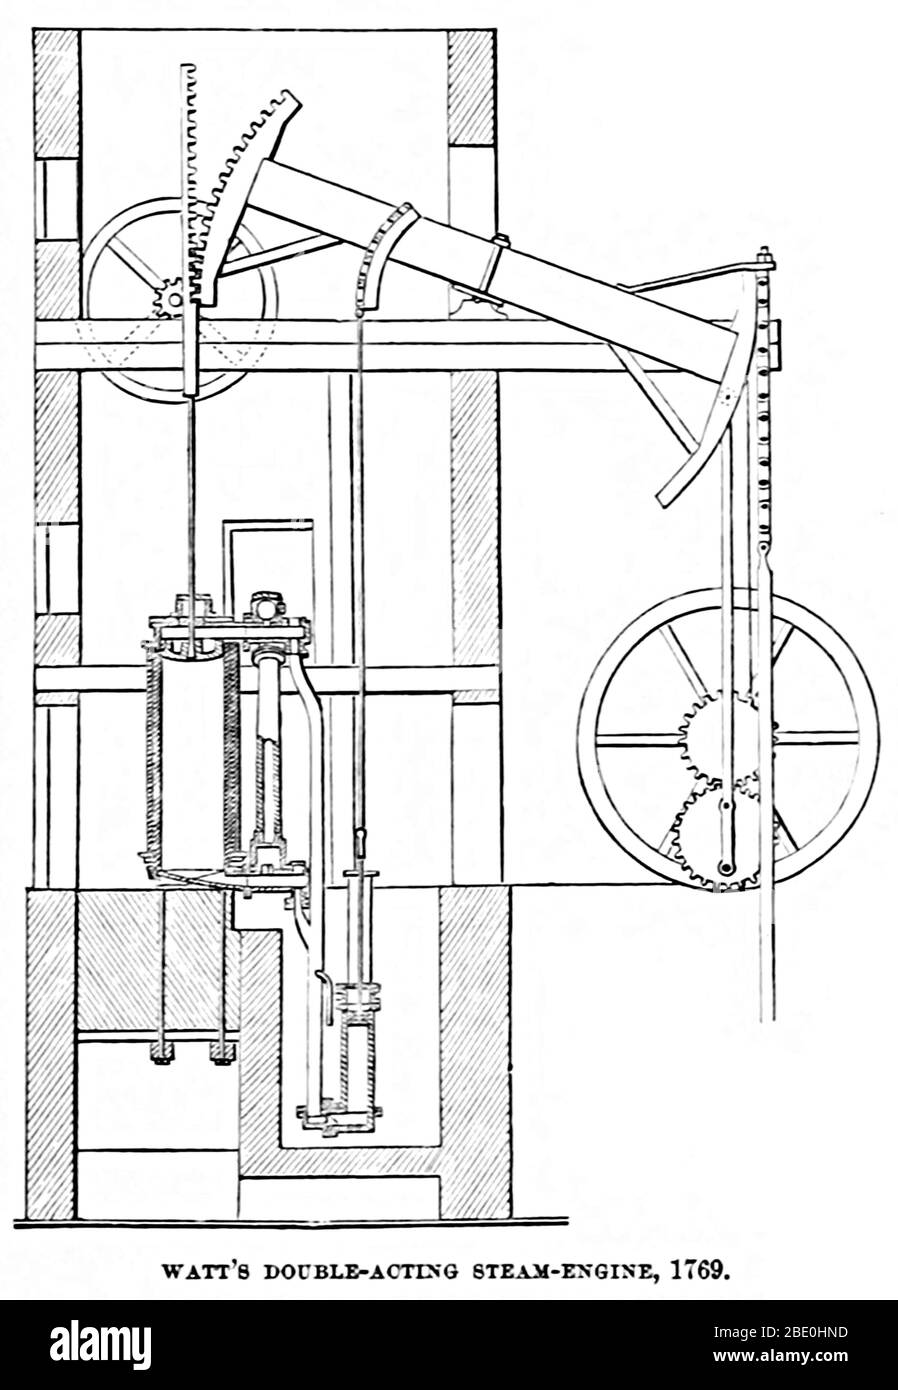 Motore a vapore a doppia azione Watts. Il motore a vapore Watt (in alternativa noto come motore a vapore Boulton e Watt) è stato il primo tipo di motore a vapore ad utilizzare vapore ad una pressione appena superiore all'atmosfera per azionare il pistone aiutato da un vuoto parziale. Migliorando il design del motore 1712 Newcomen, il motore a vapore Watt, sviluppato sporadicamente dal 1763 al 1775, è stato il passo successivo nello sviluppo del motore a vapore. I due miglioramenti più importanti di Watt sono stati il condensatore separato e il movimento rotatorio. Illustrazione da UNA rassegna del progresso americano di Theodore Dwight Woolsey, Foto Stock